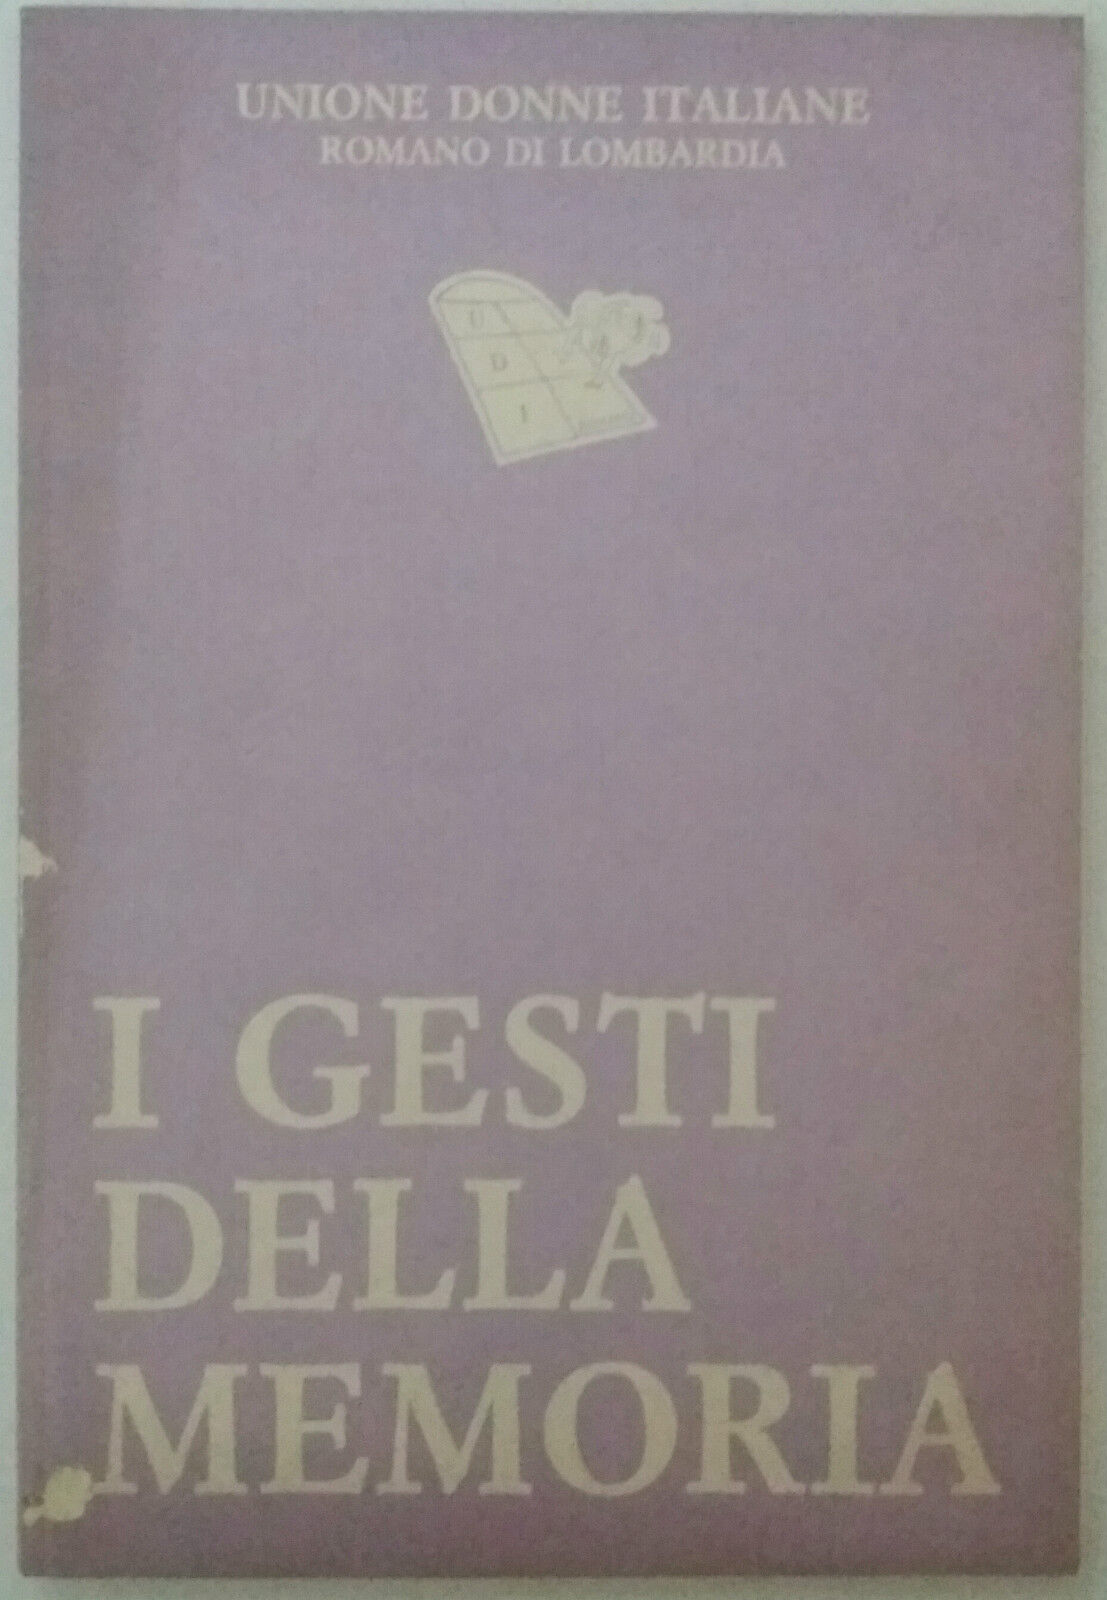 I gesti della memoria - AA. VV. - Unione Donne Italiane - 1991 - G